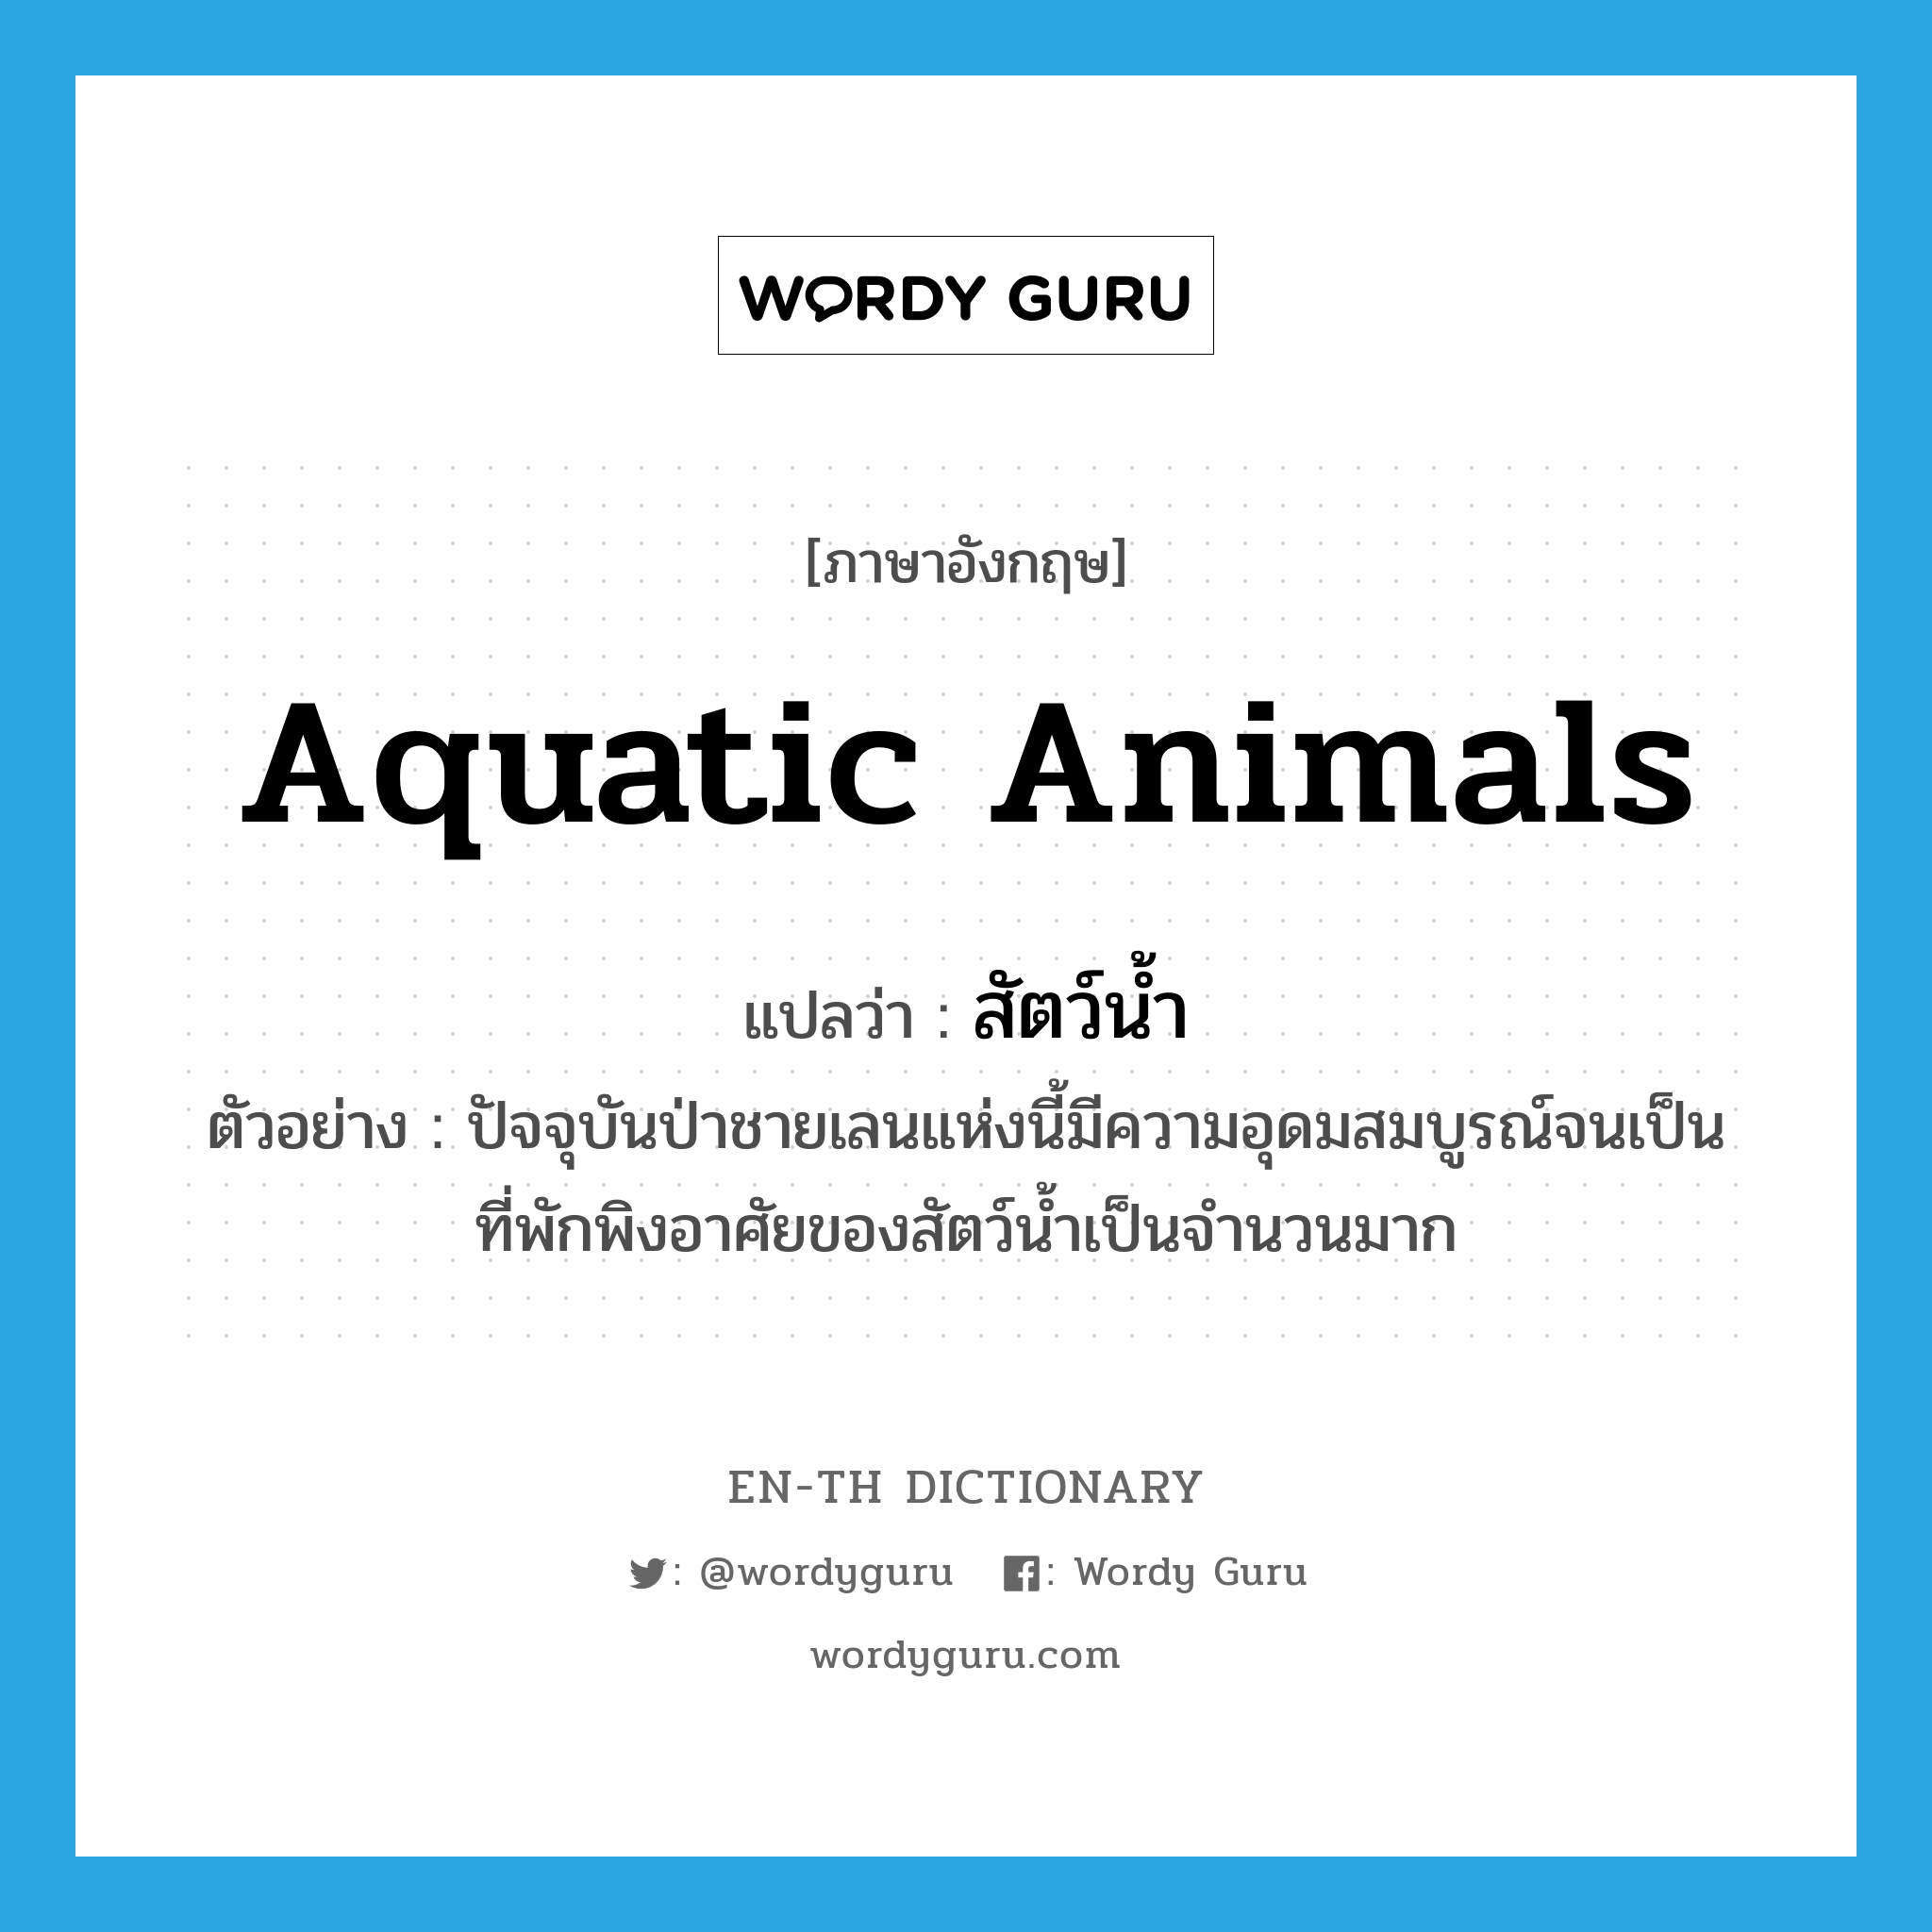 aquatic animals แปลว่า?, คำศัพท์ภาษาอังกฤษ aquatic animals แปลว่า สัตว์น้ำ ประเภท N ตัวอย่าง ปัจจุบันป่าชายเลนแห่งนี้มีความอุดมสมบูรณ์จนเป็นที่พักพิงอาศัยของสัตว์น้ำเป็นจำนวนมาก หมวด N